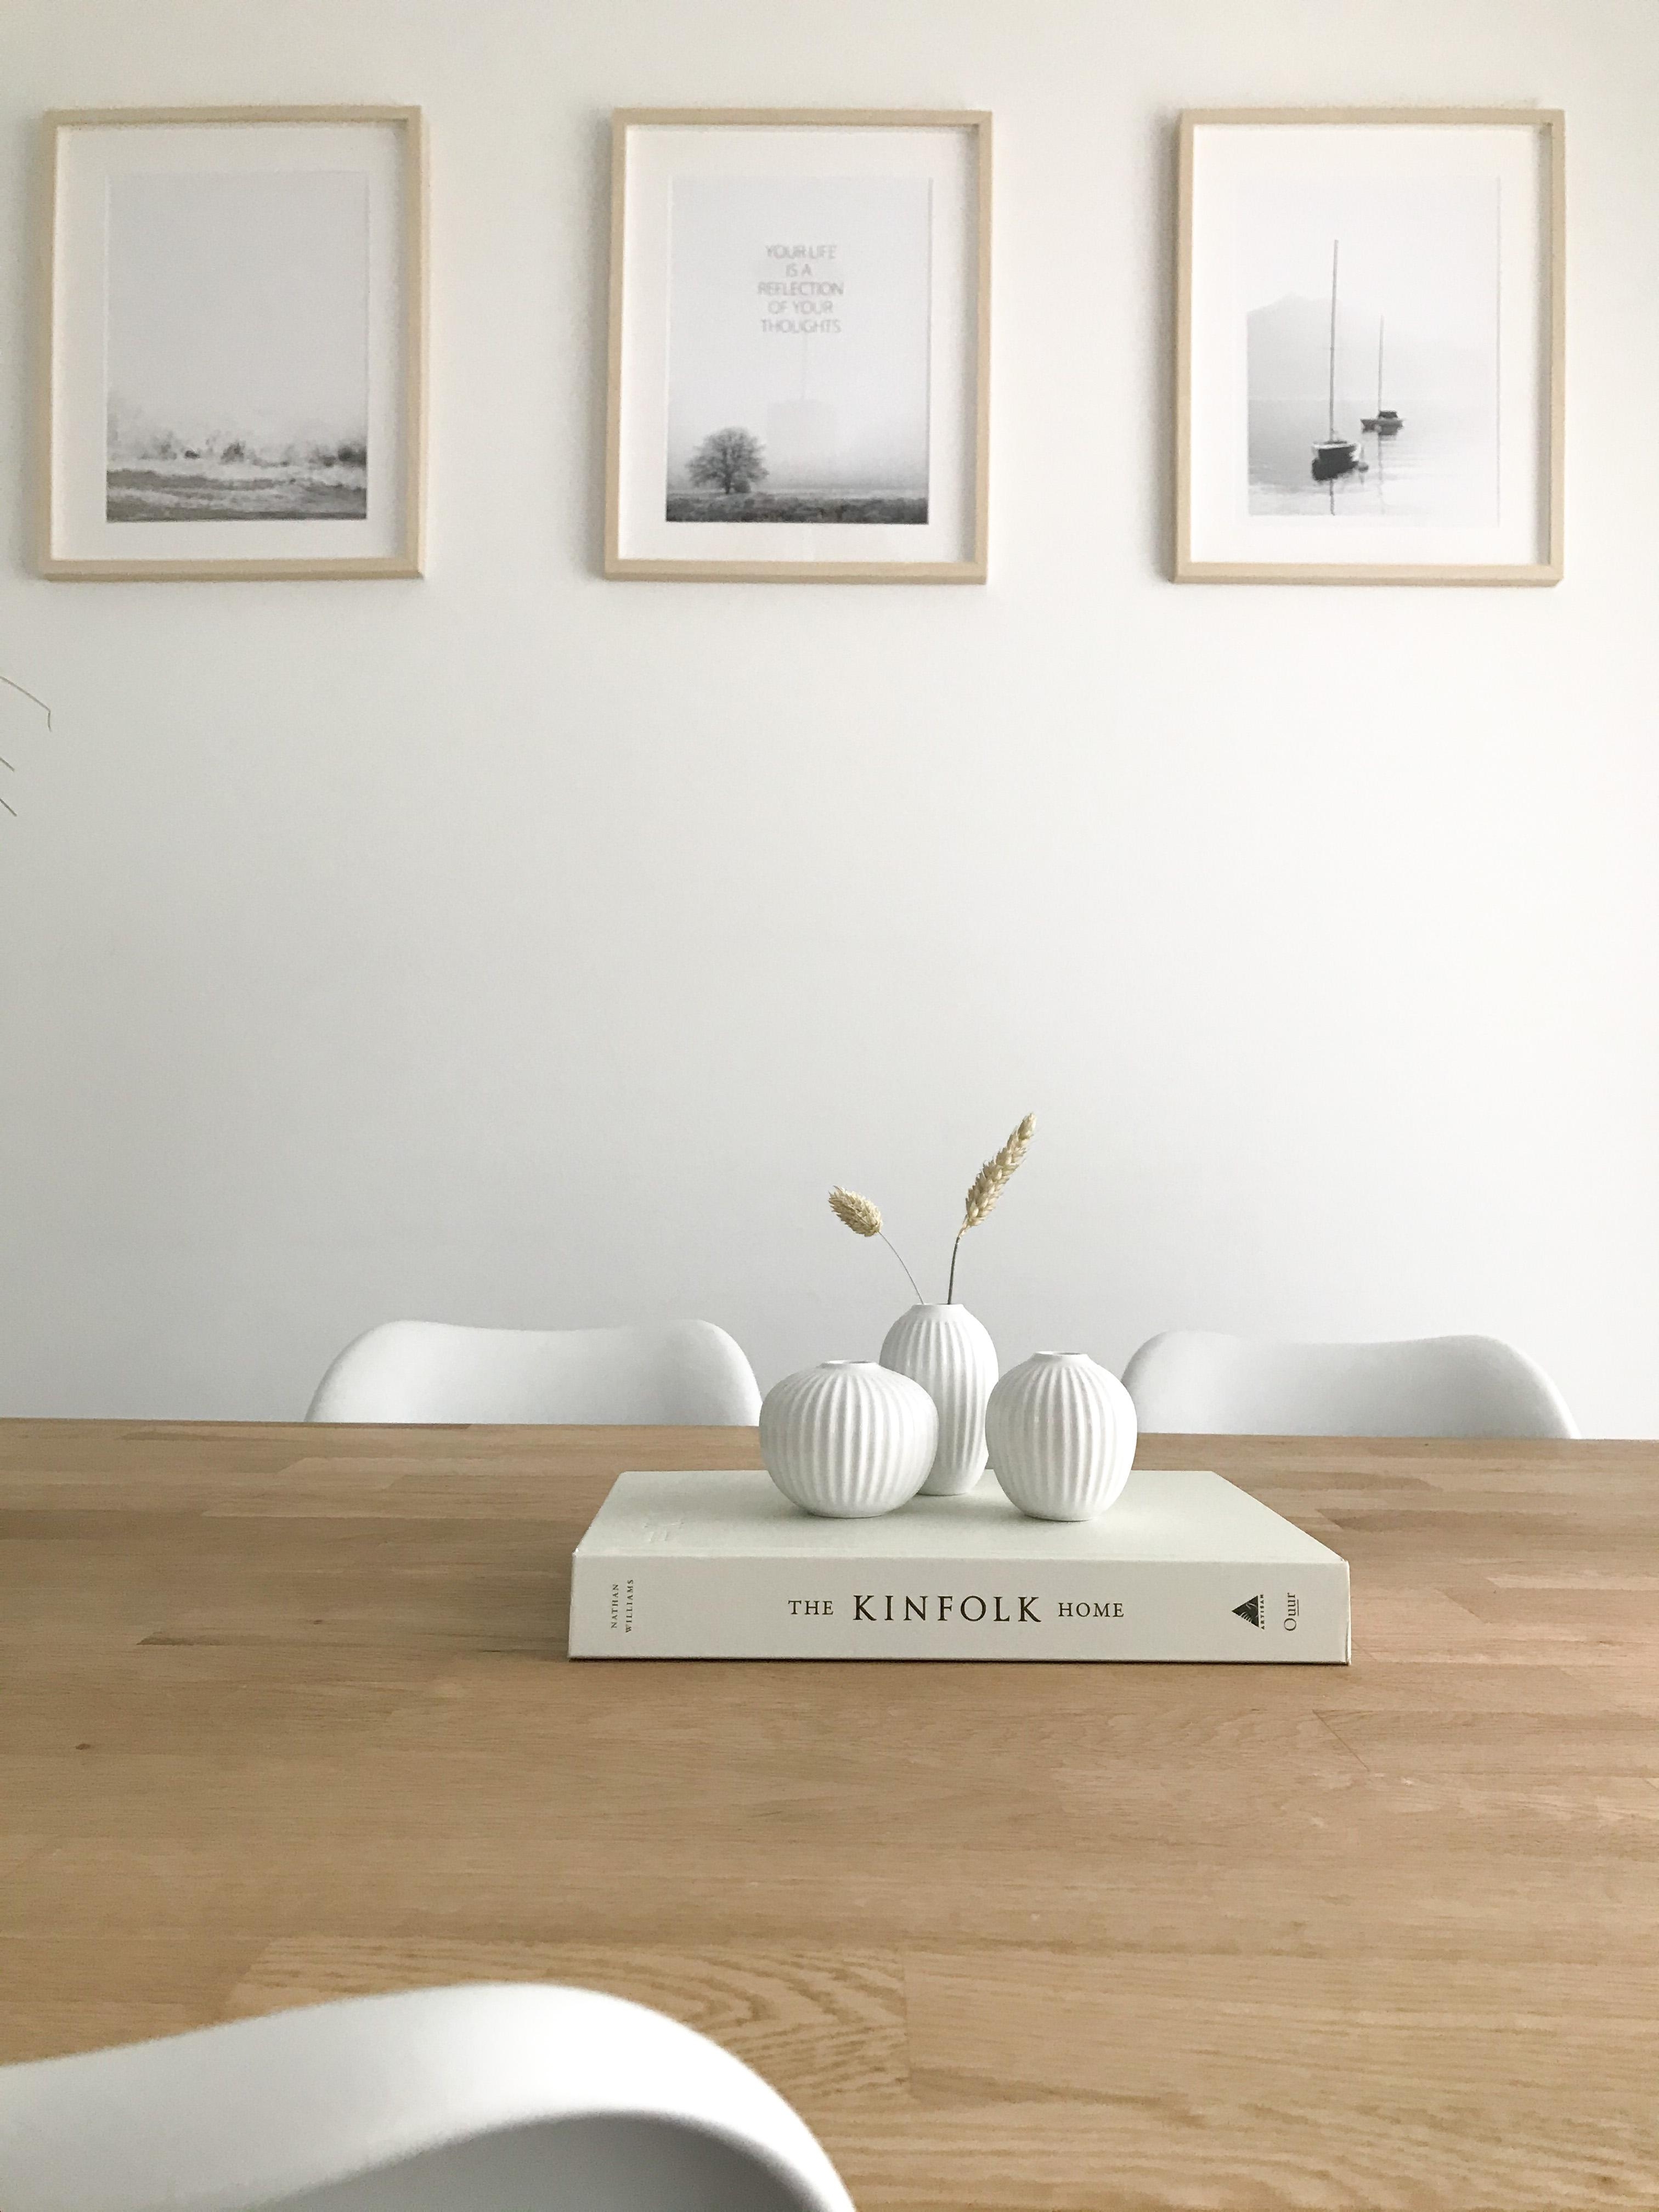 So wie ich es am liebsten mag, schlicht und dezent! 
#minimalism #wohnzimmer #dezent #skandinavisch #vasenmittwoch 